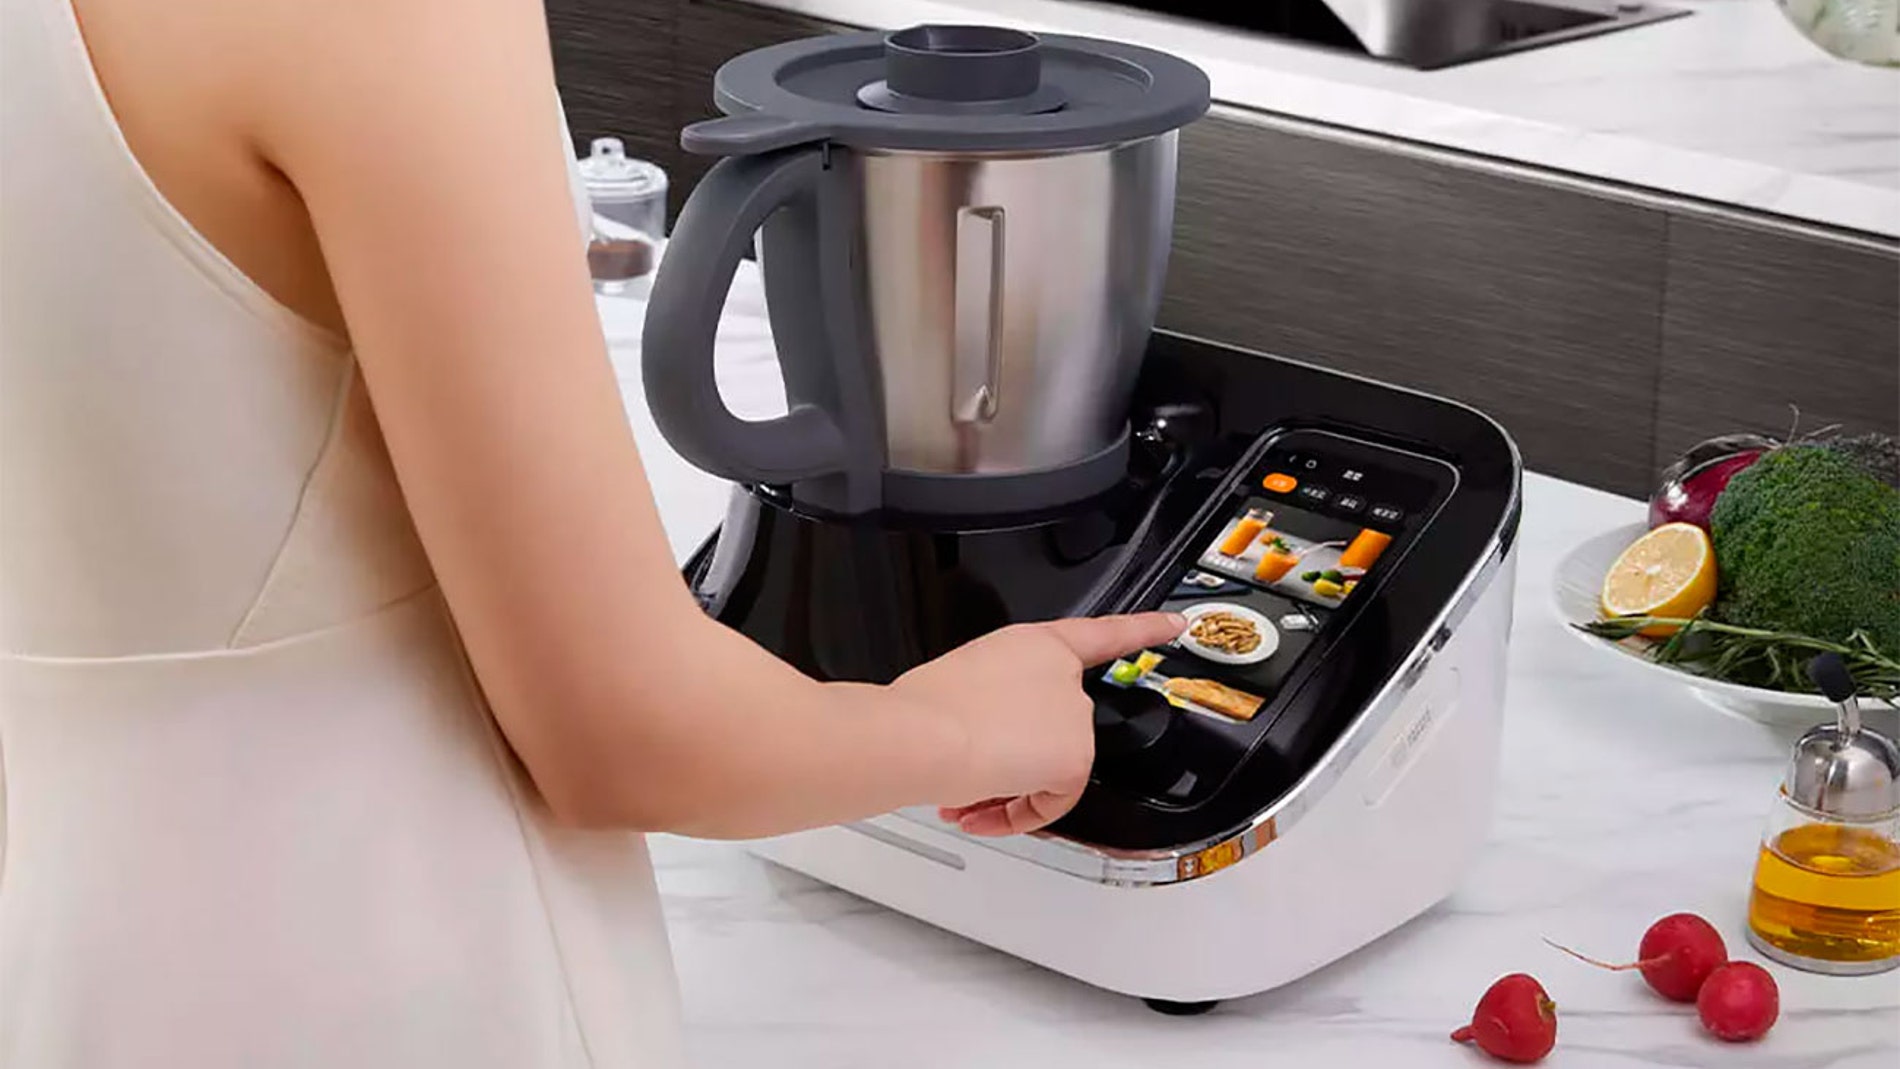 Xiaomi vende ahora un robot de cocina que se programa desde el móvil